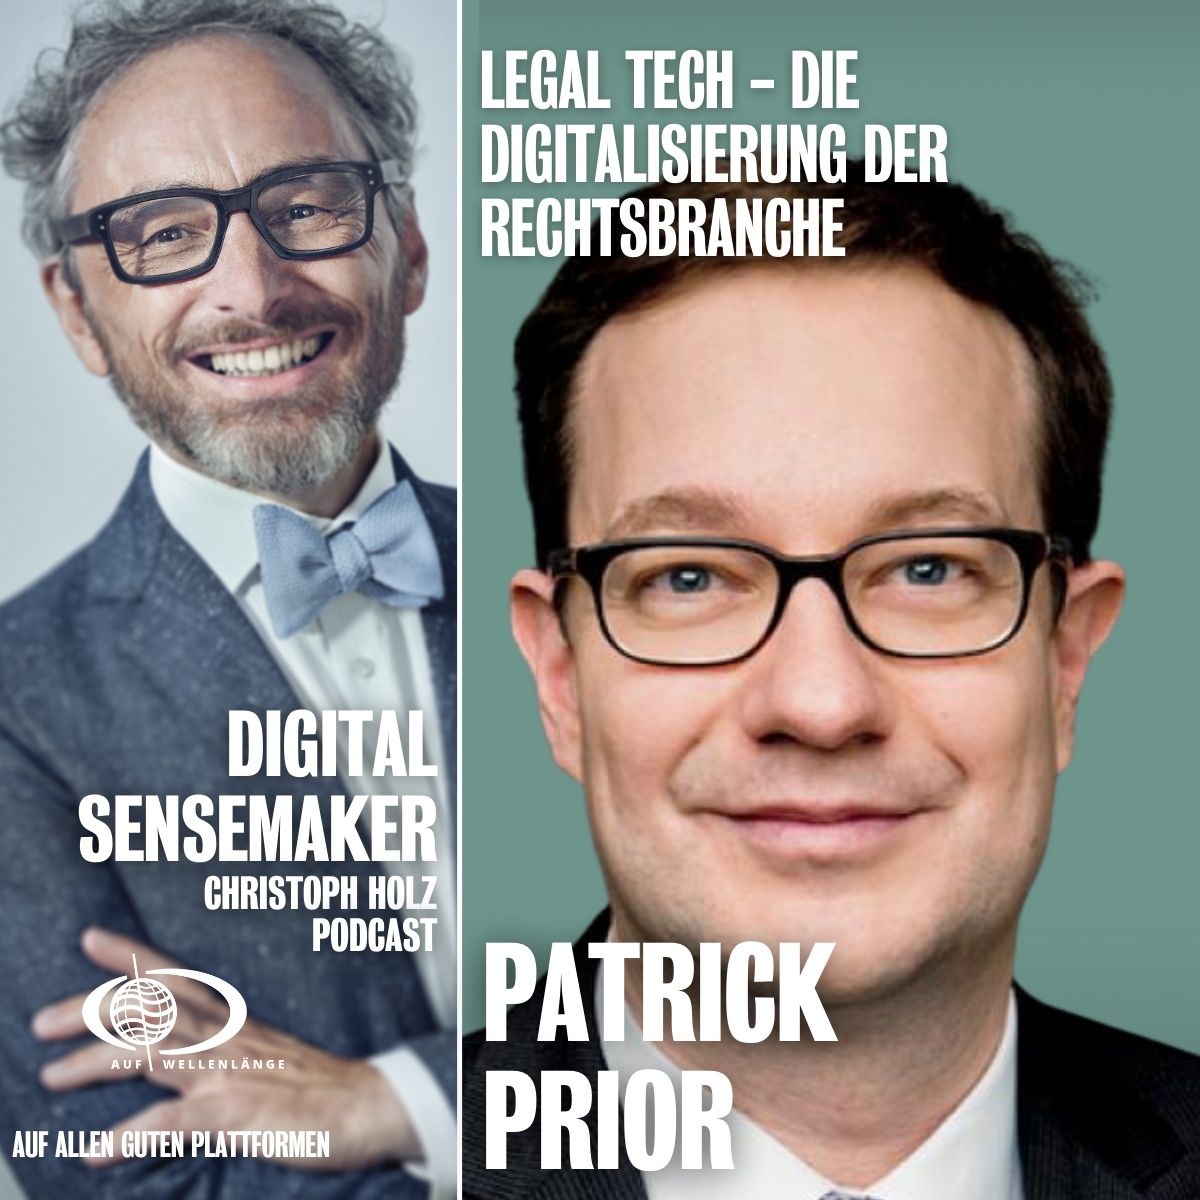 #132 "Legal Tech - Die Digitalisierung der Rechtsbranche" mit Patrick Prior, Jurist und Unternehmer